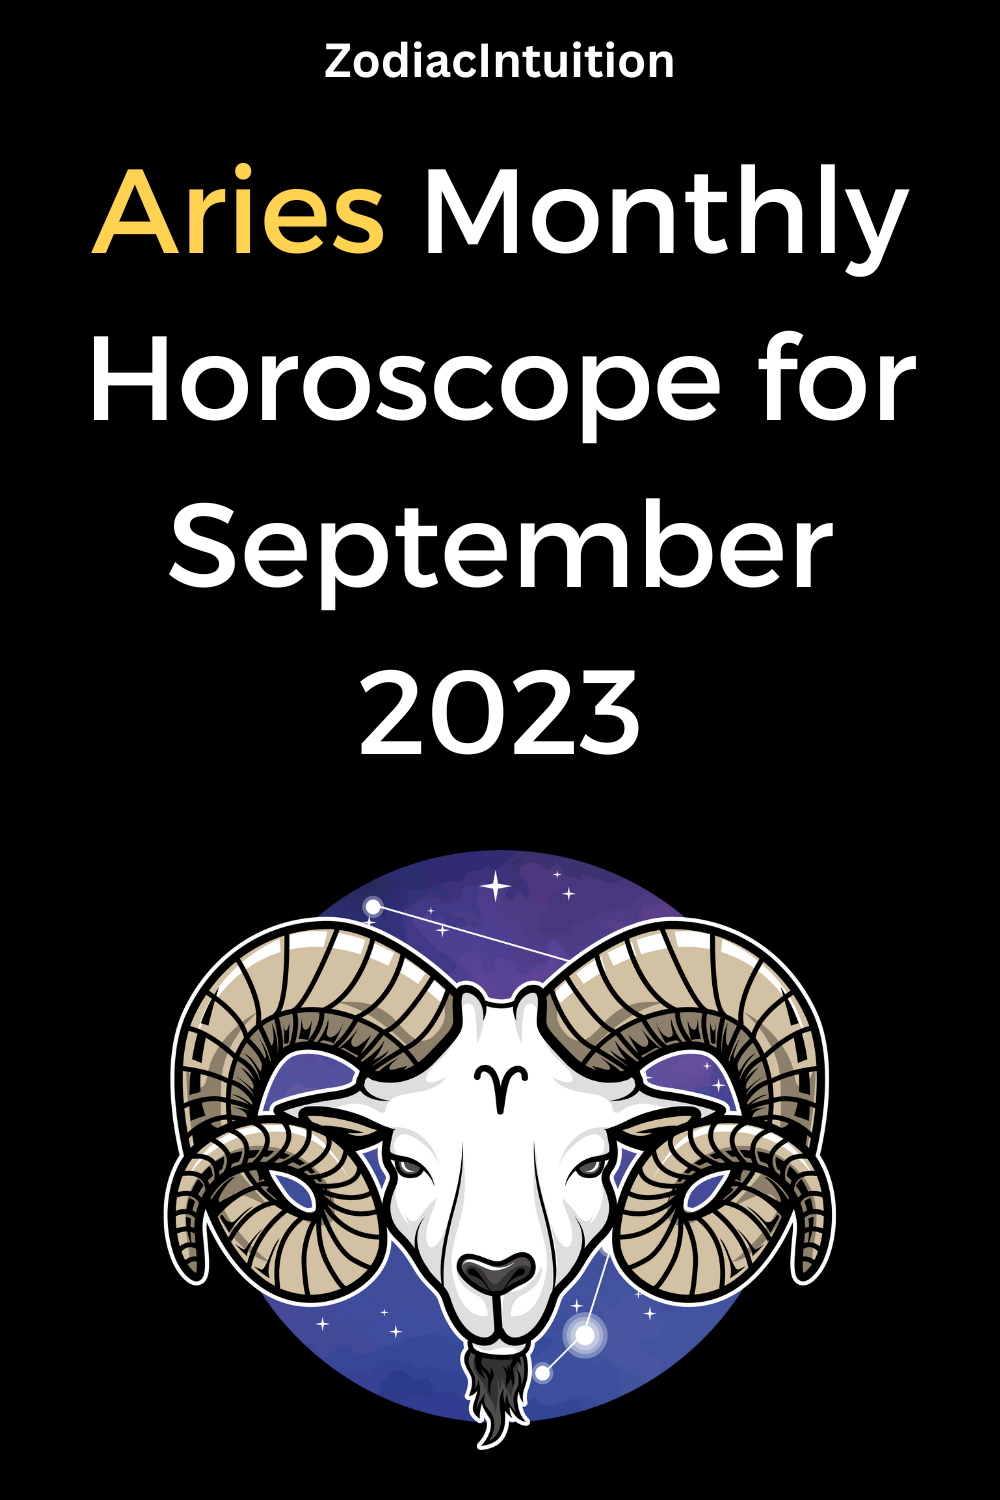 Aries Monthly Horoscope for September 2023